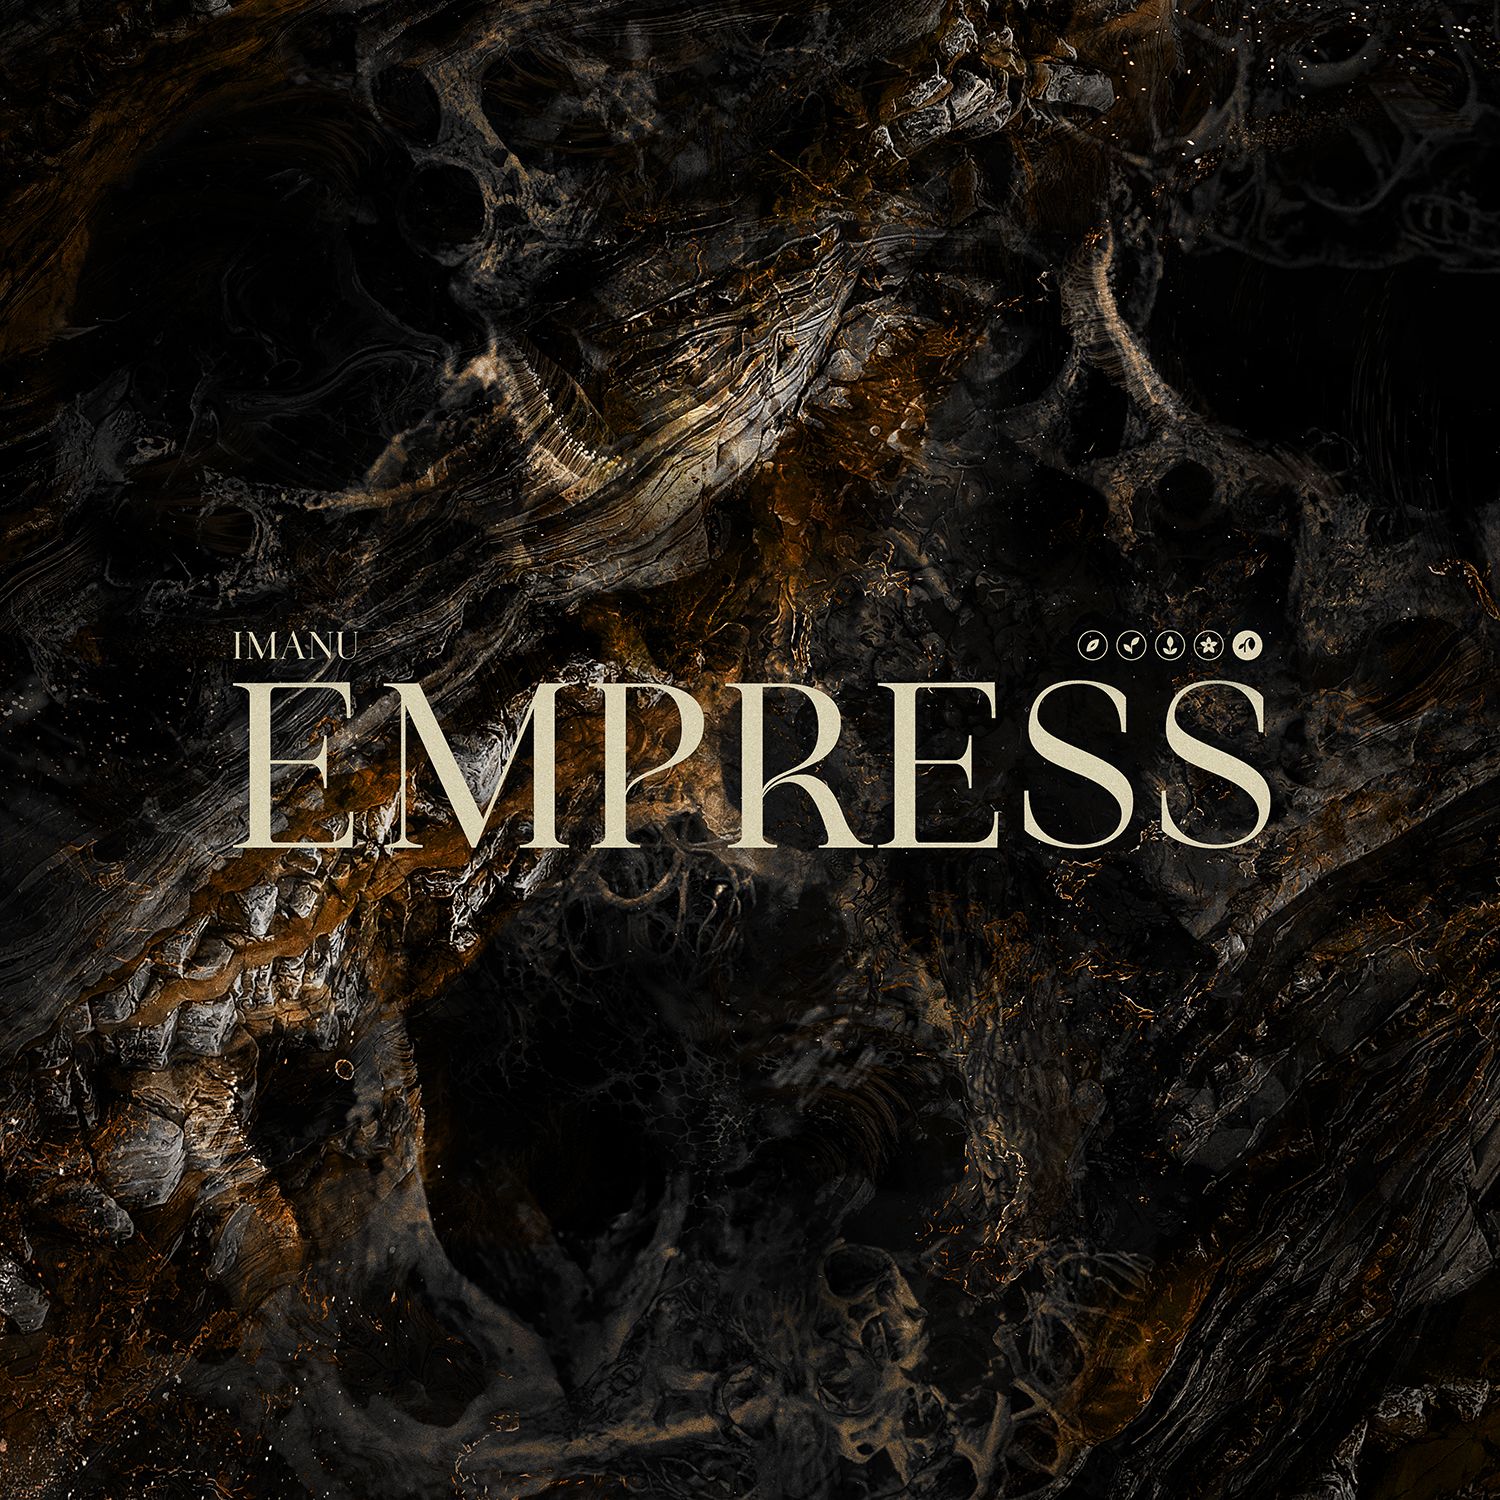 डाउनलोड करा IMANU - Empress